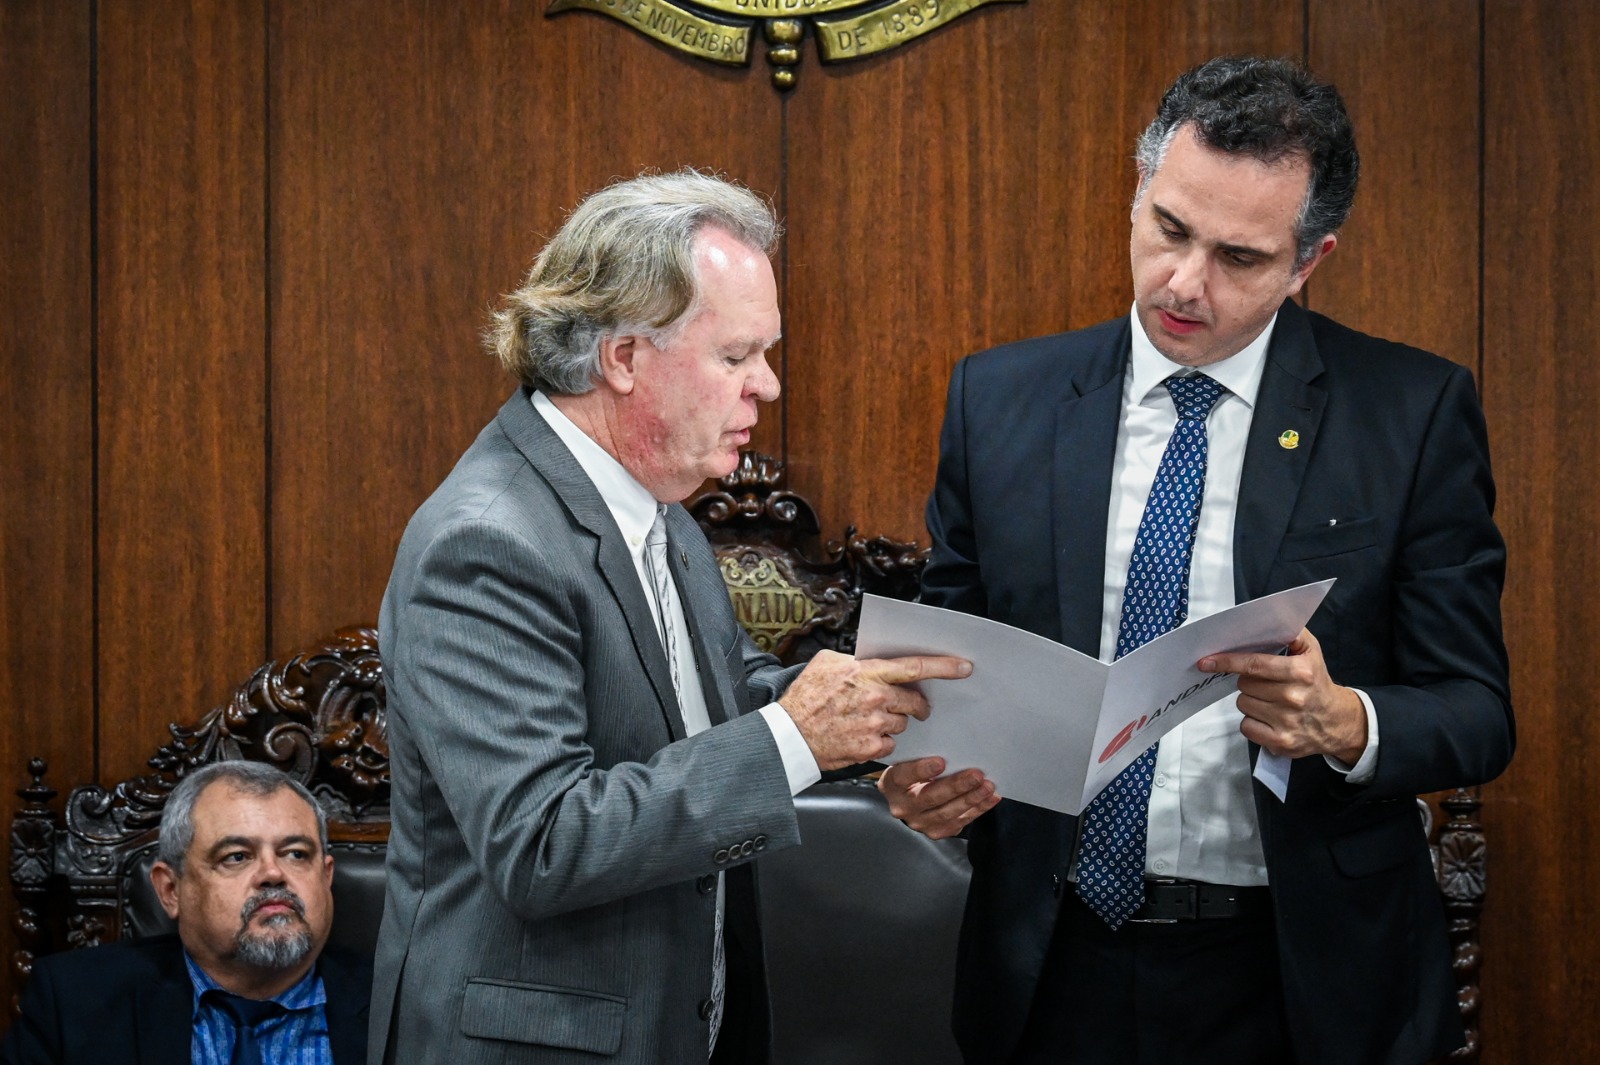 Registro do momento em que Valder Steffen Jr. (à esquerda) repassa documento ao senador Rodrigo Pacheco